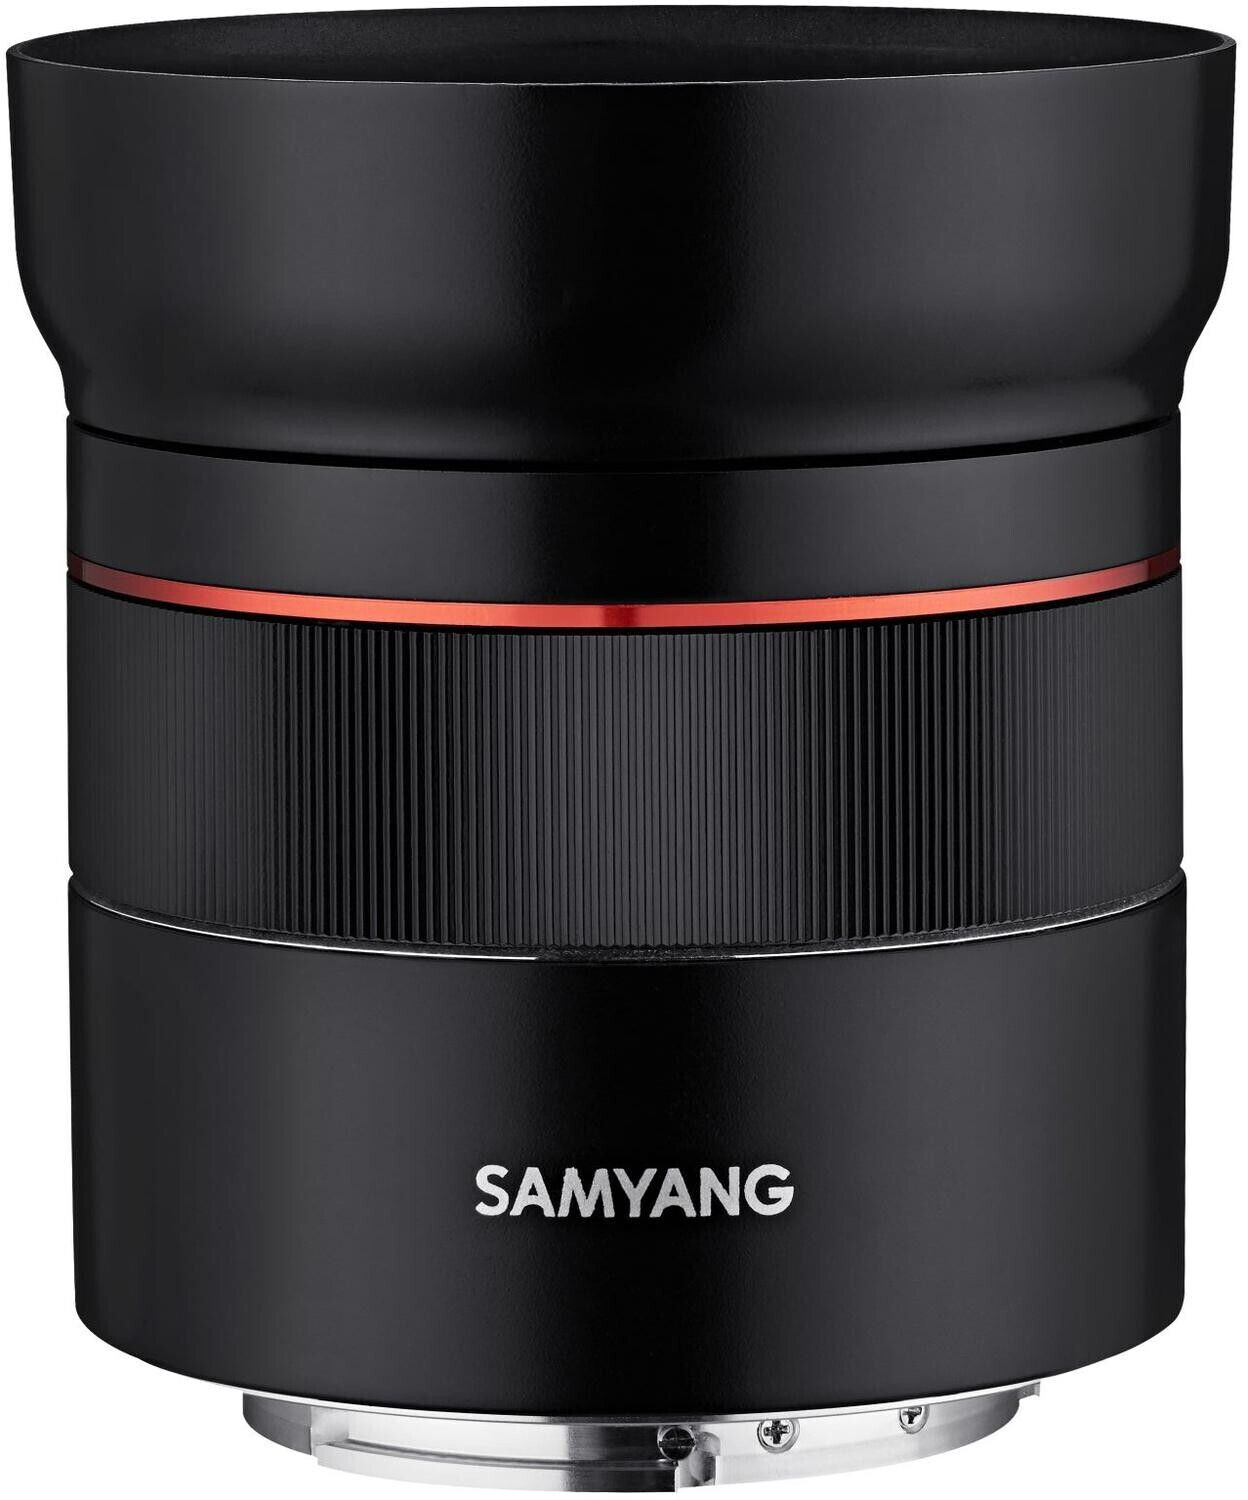 SAMYANG 45mm F1.8 FE ソニー フルサイズ対応 - レンズ(単焦点)